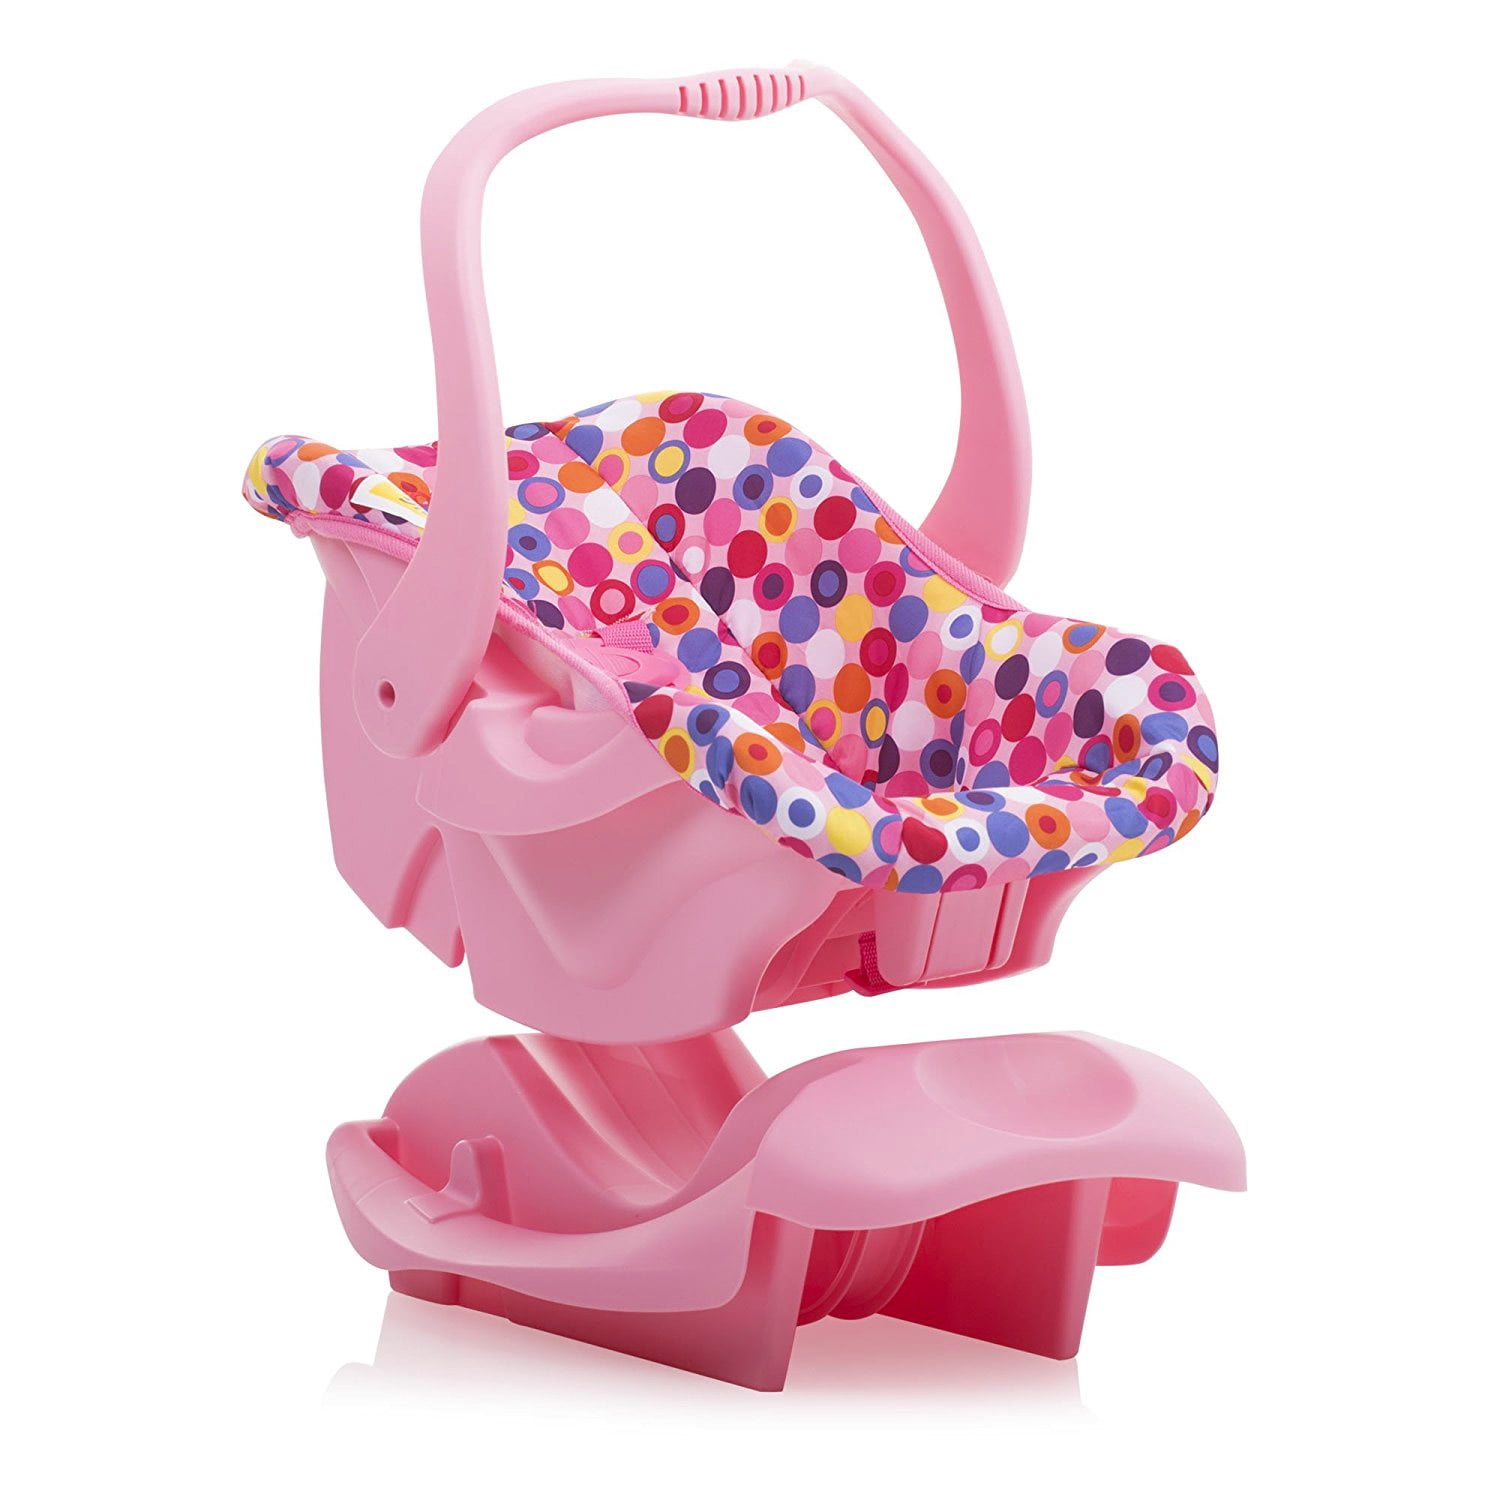 joovy toy infant car seat